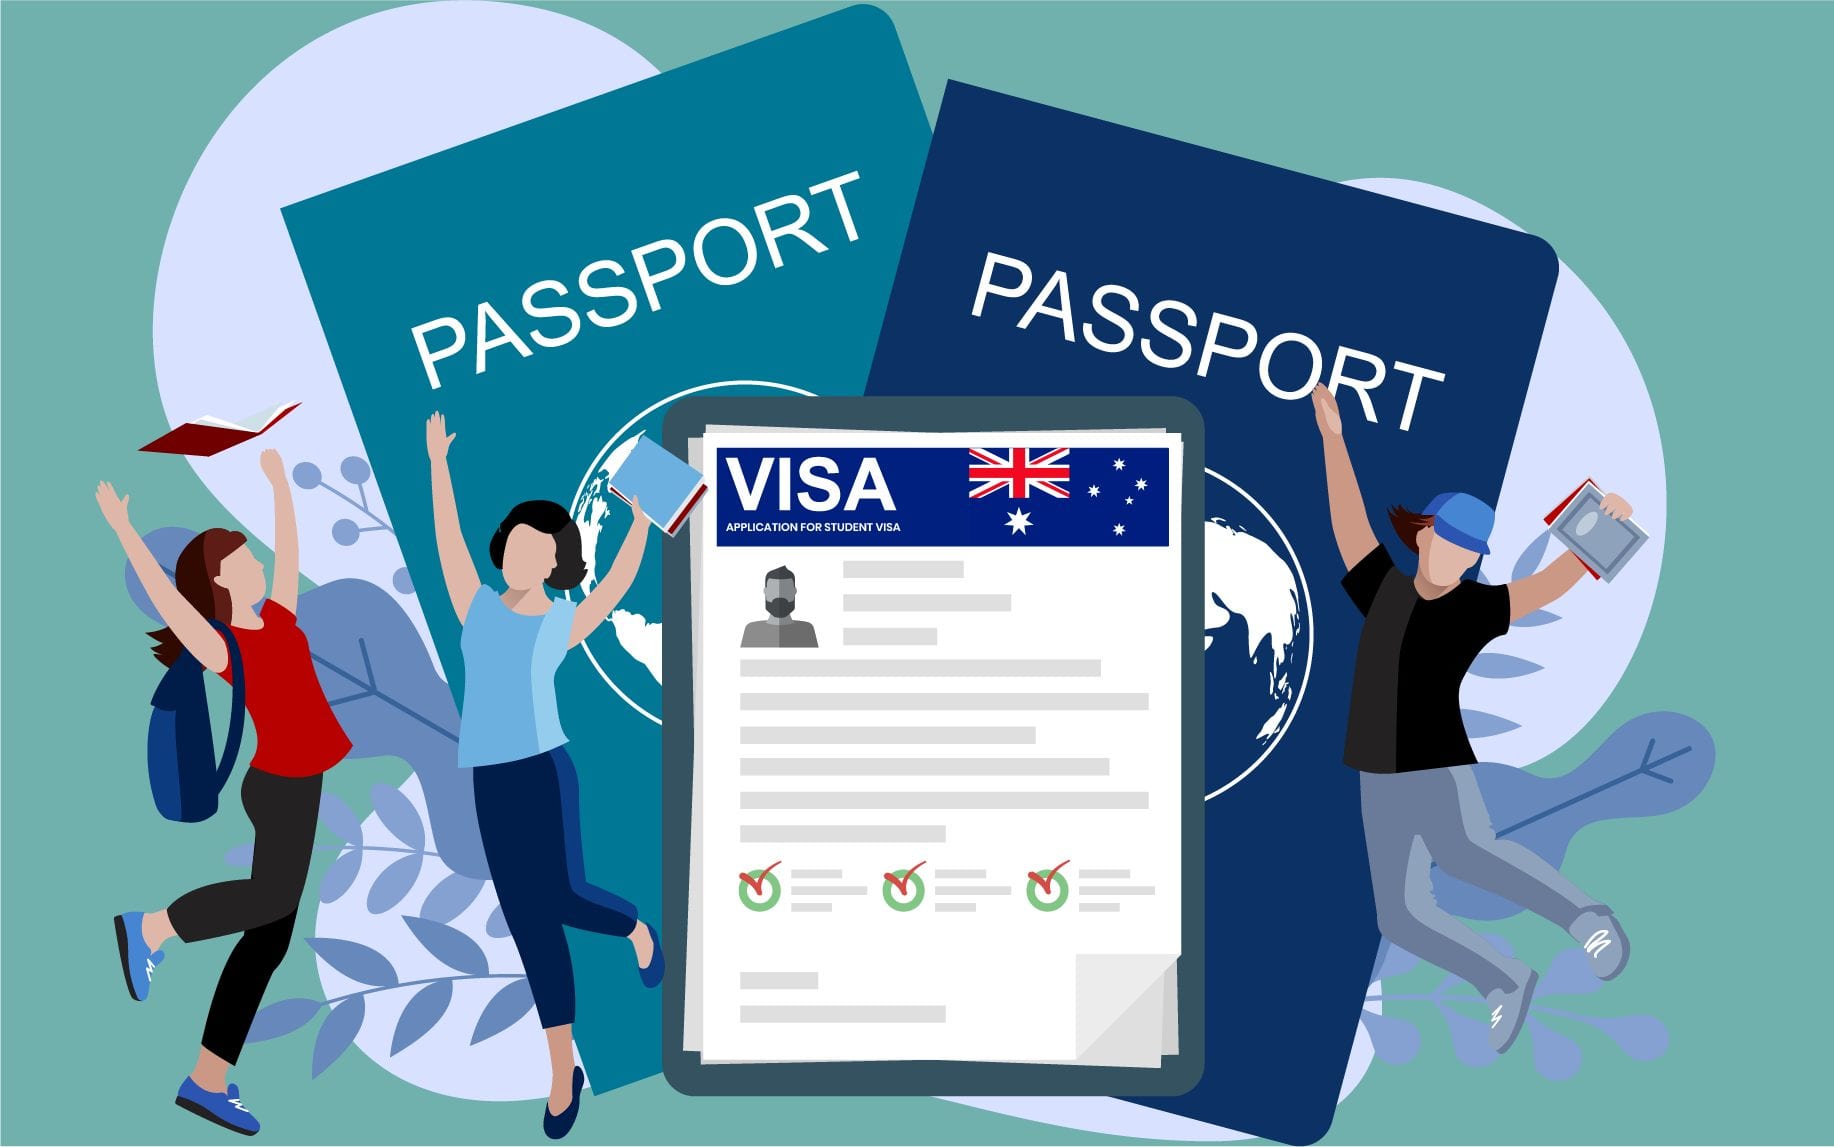 Student visa information